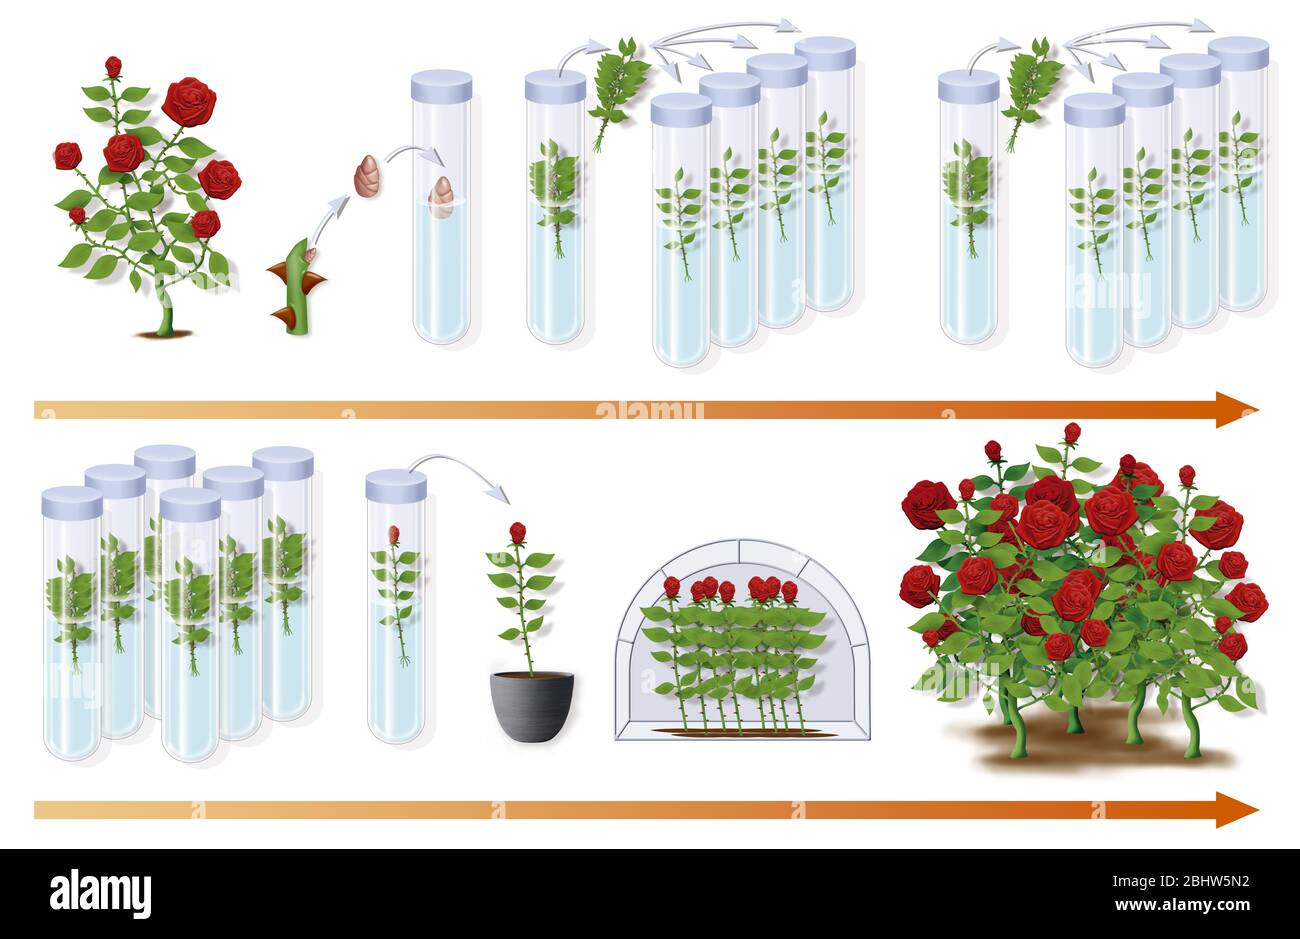 Didaktische Illustration zeigt die Mikrobouturierung des Rosenbusches, der es ermöglicht, aus einem einzigen Stück Rose mehr als 40 000 Rosen pro Jahr zu erhalten. Stockfoto